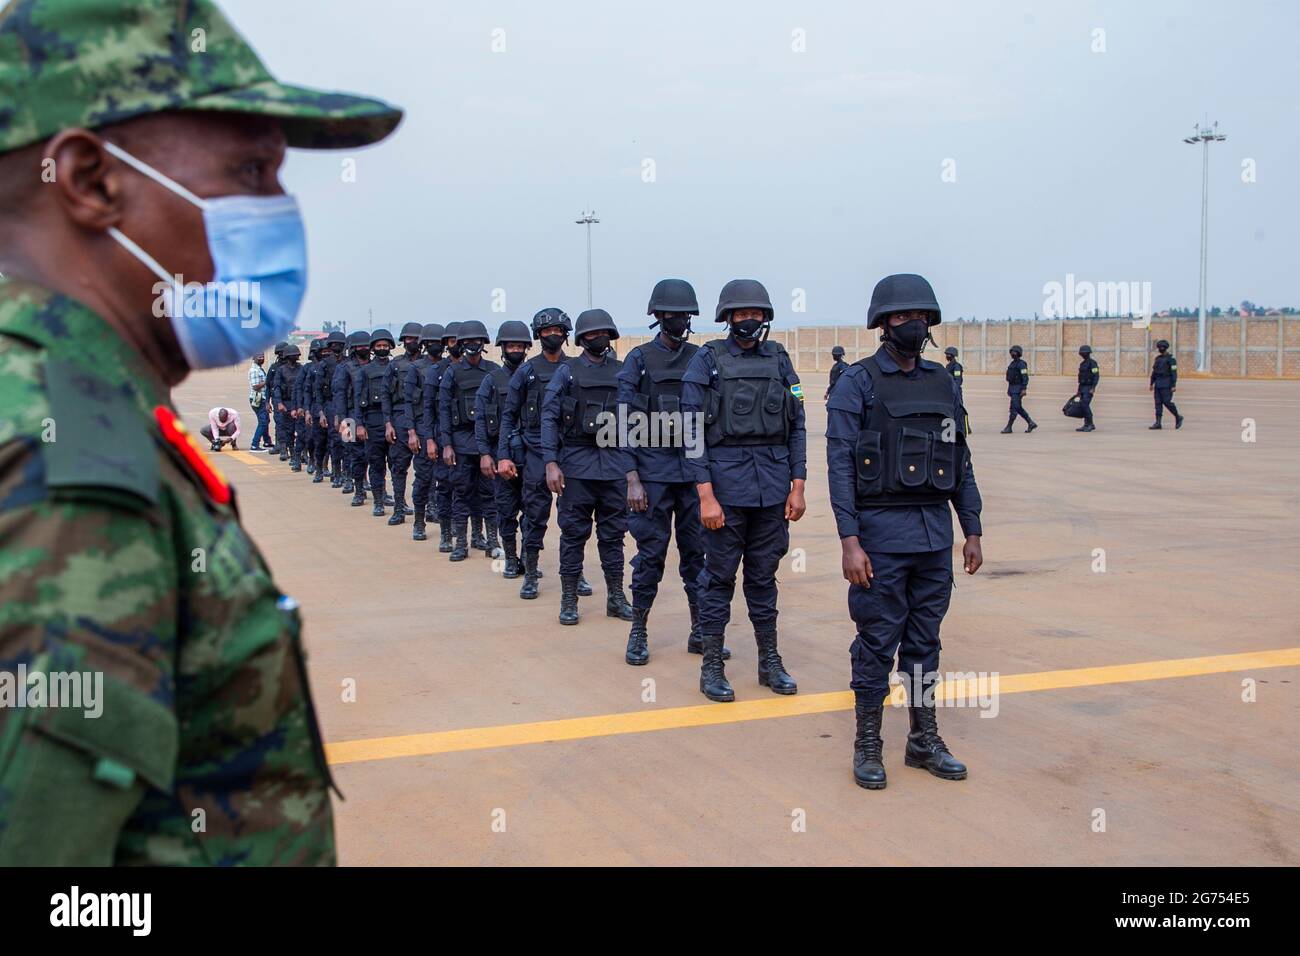 (210711) -- KIGALI, 11. Juli 2021 (Xinhua) -- ruandische Armee- und Polizeikräfte warten darauf, in Kigali, der Hauptstadt Ruandas, am 10. Juli 2021 ein Flugzeug nach Mosambik zu besteigen. Die ruandische Regierung hat am Freitag begonnen, eine 1000-köpfige gemeinsame Truppe von Armee- und Polizeikräften nach Mosambik zu entsenden, um die Bemühungen zur Wiederherstellung der staatlichen Autorität in der unruhig-verhafteten Region zu unterstützen. Der Einsatz des Kontingents, das aus Mitgliedern der Ruanda Defence Force und der Ruanda National Police besteht, nach Cabo Delgado, Mosambiks gasreicher Provinz, die von bewaffneten Gruppen und Aufständischen im Zusammenhang mit dem Islamischen Staat bedroht ist Stockfoto